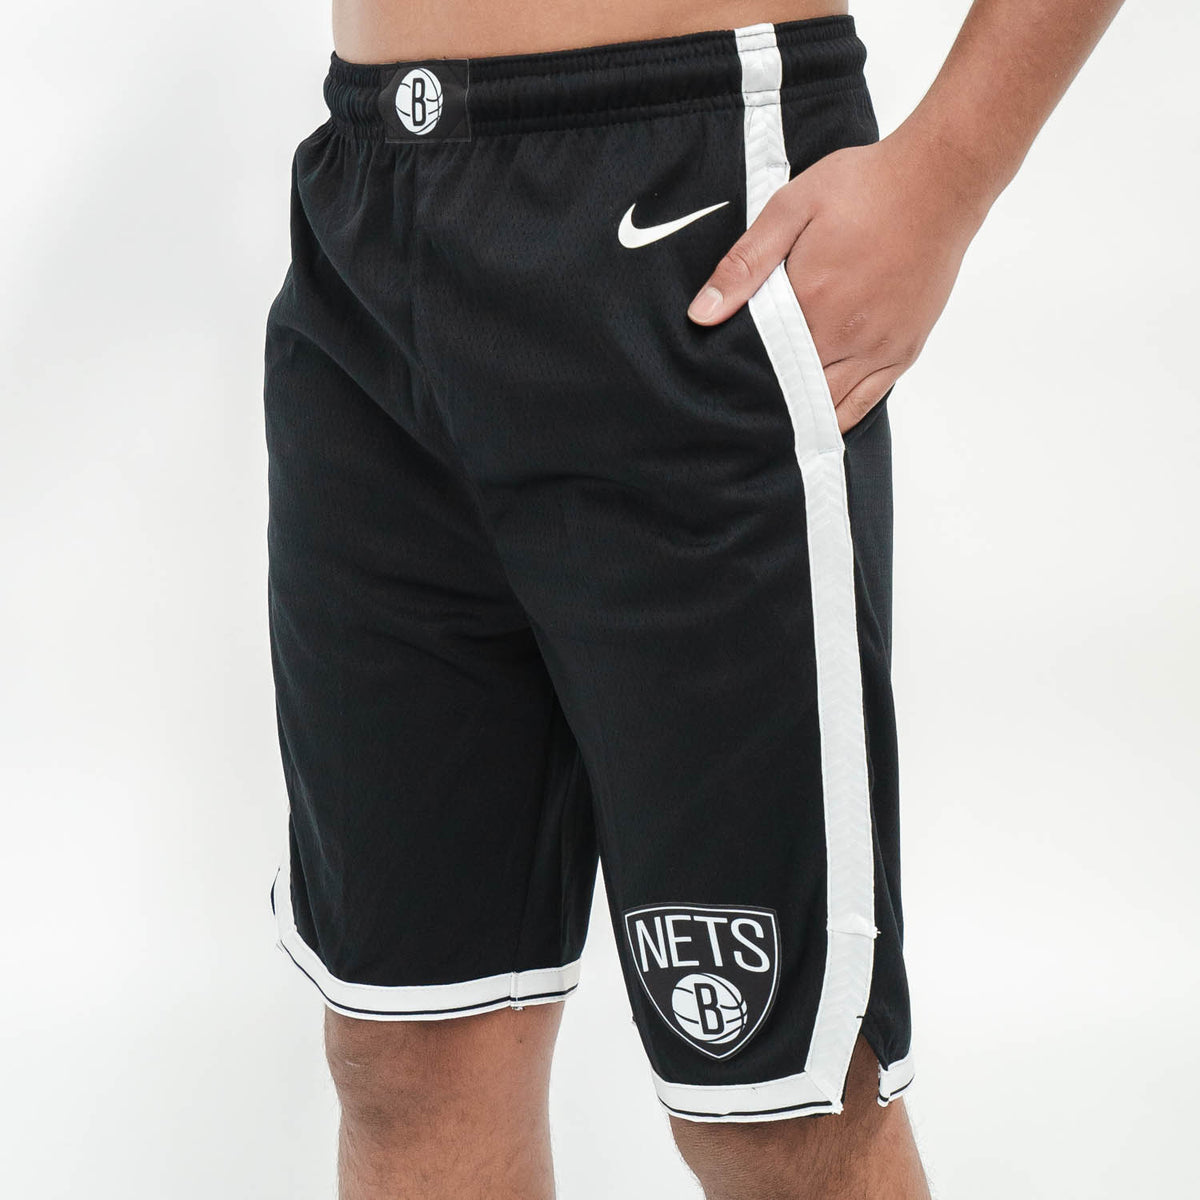 Brooklyn Nets Basketball Shorts – TOPYOUD